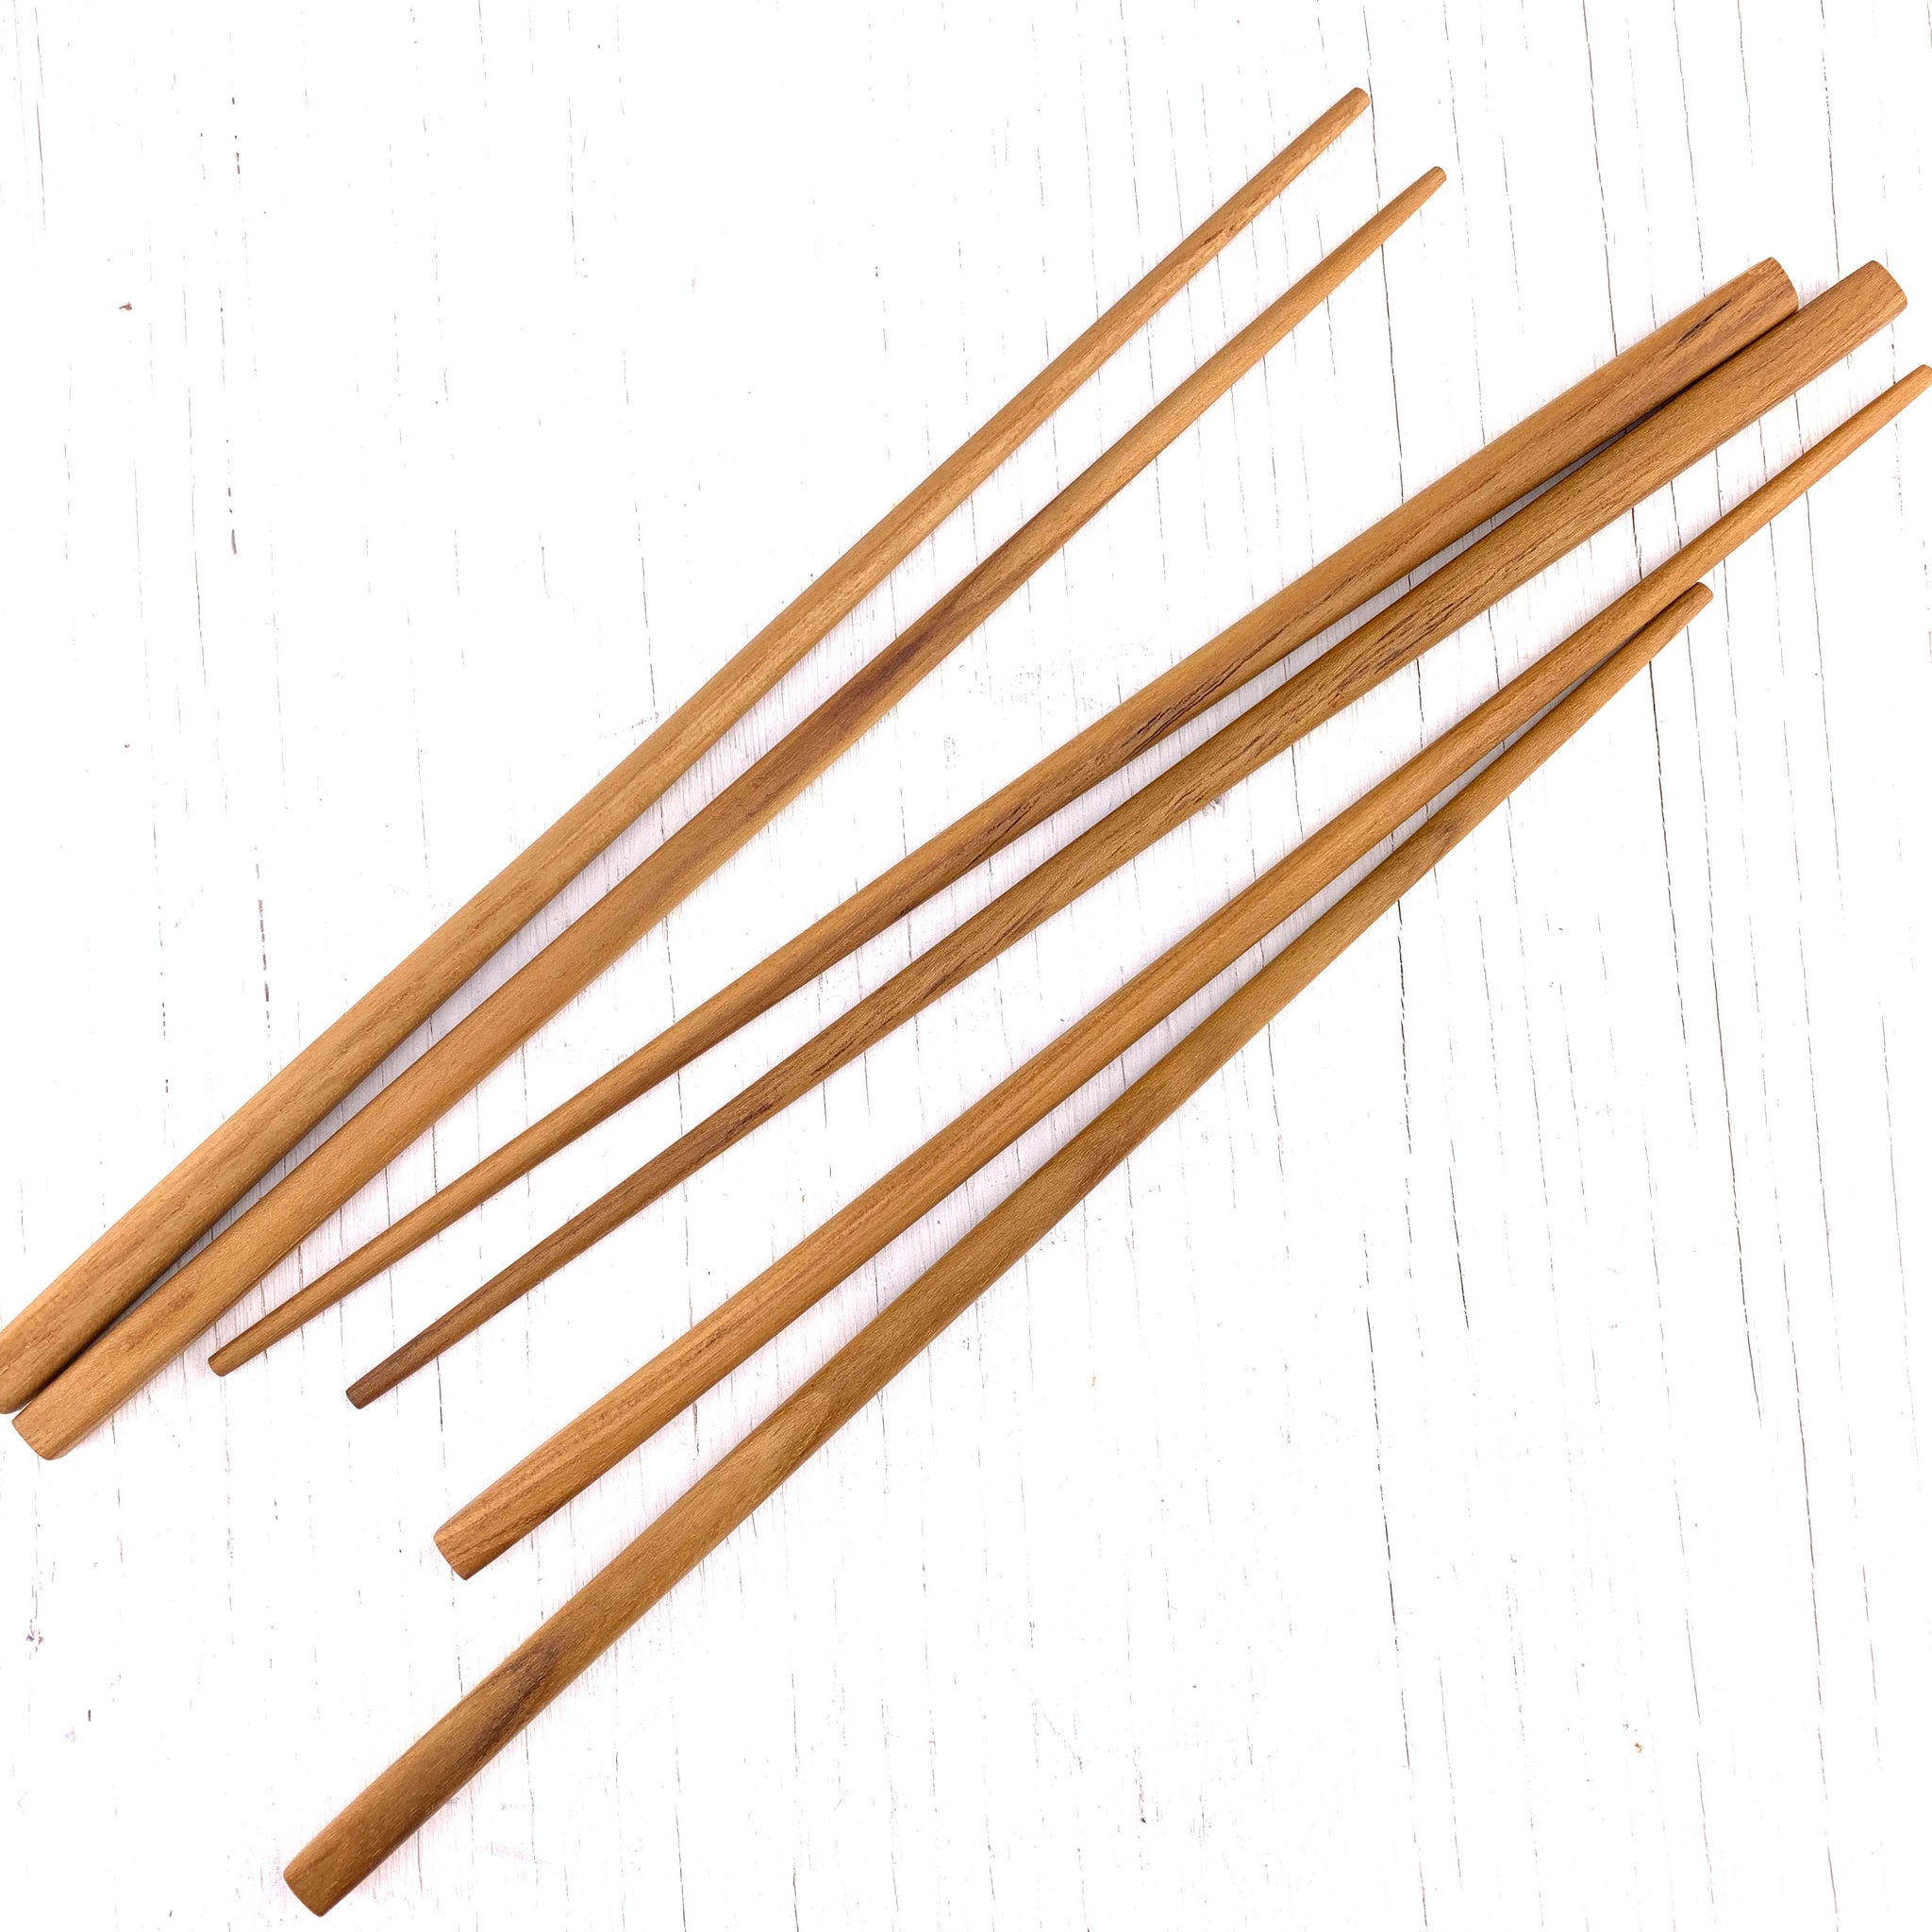 Teak Chopsticks - Pair